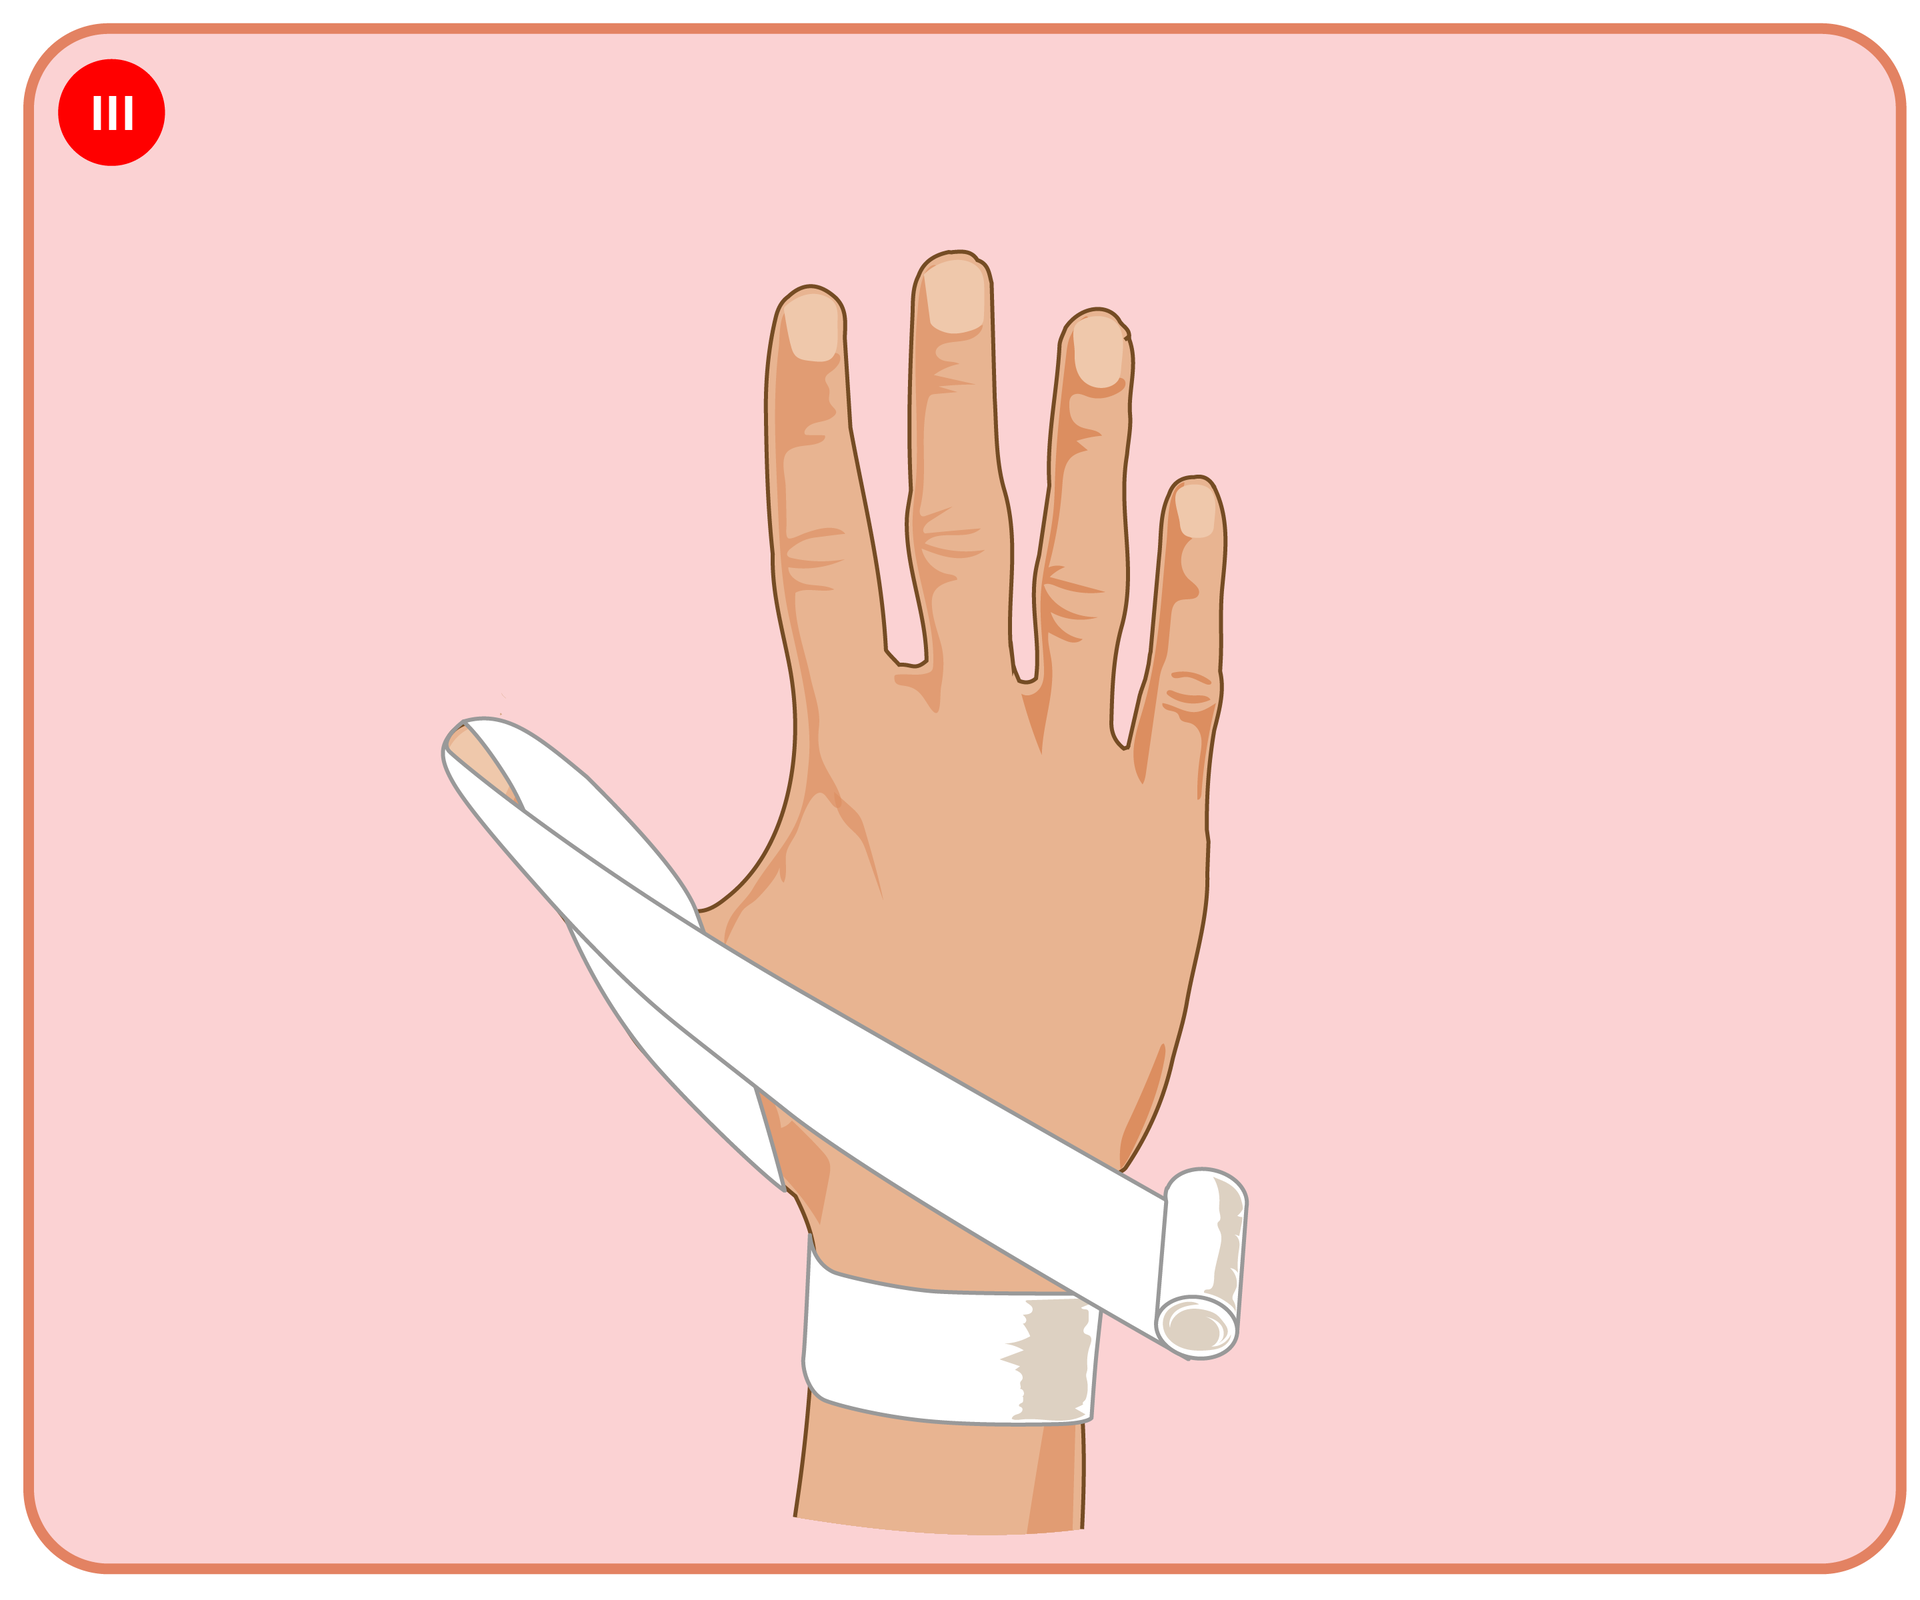 Pokaz slajdów prezentujących kolejne etapy bandażowania kciuka opatrunkiem kłosowym.